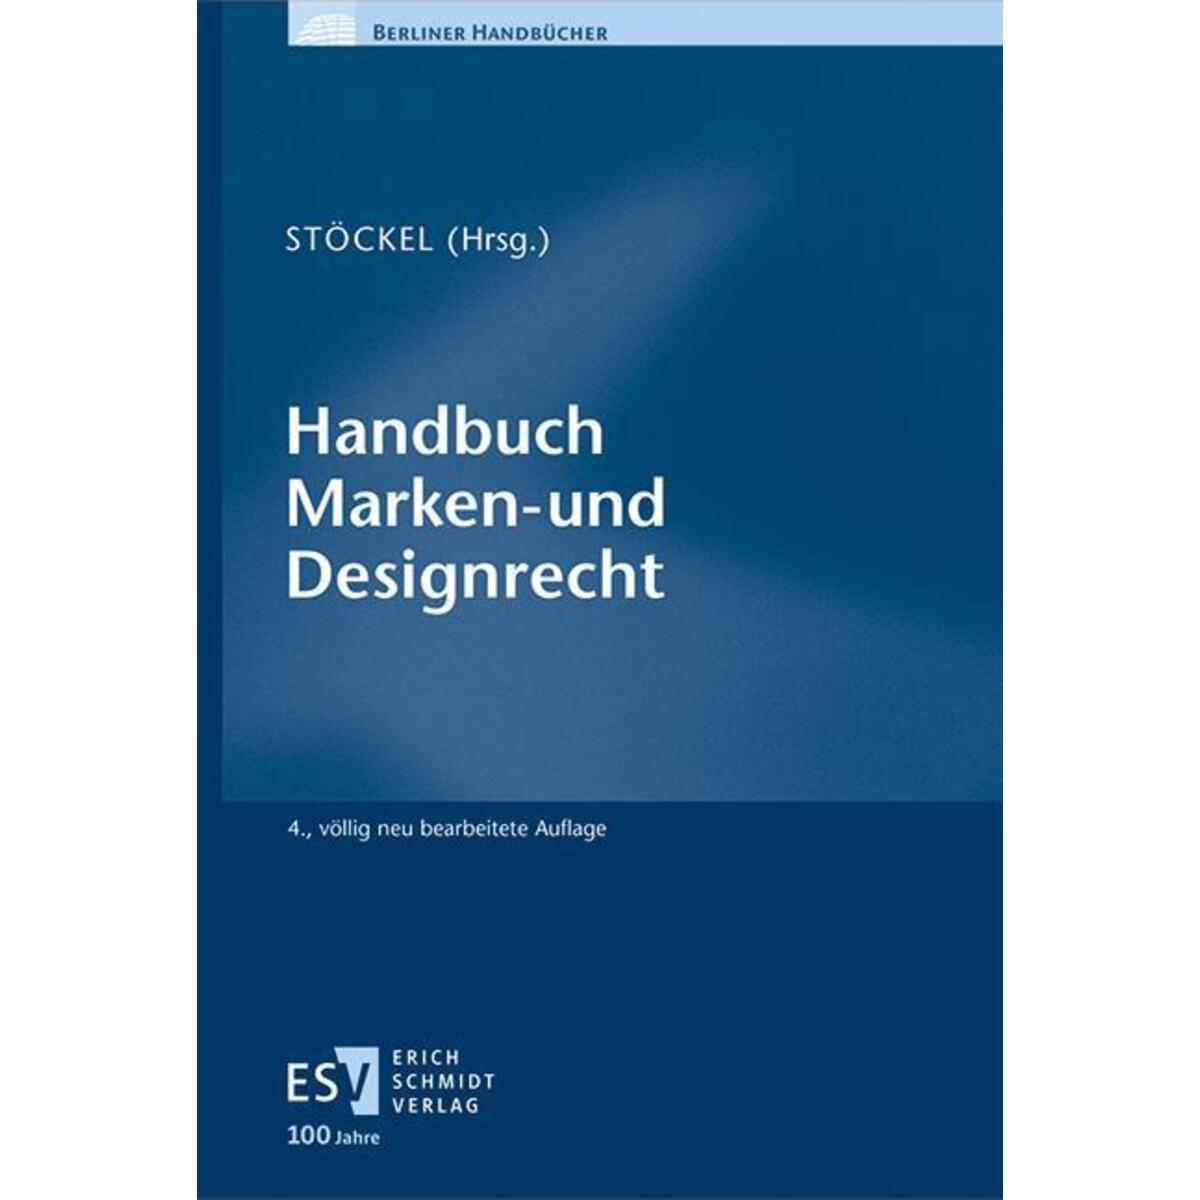 Handbuch Marken- und Designrecht von Schmidt, Erich Verlag